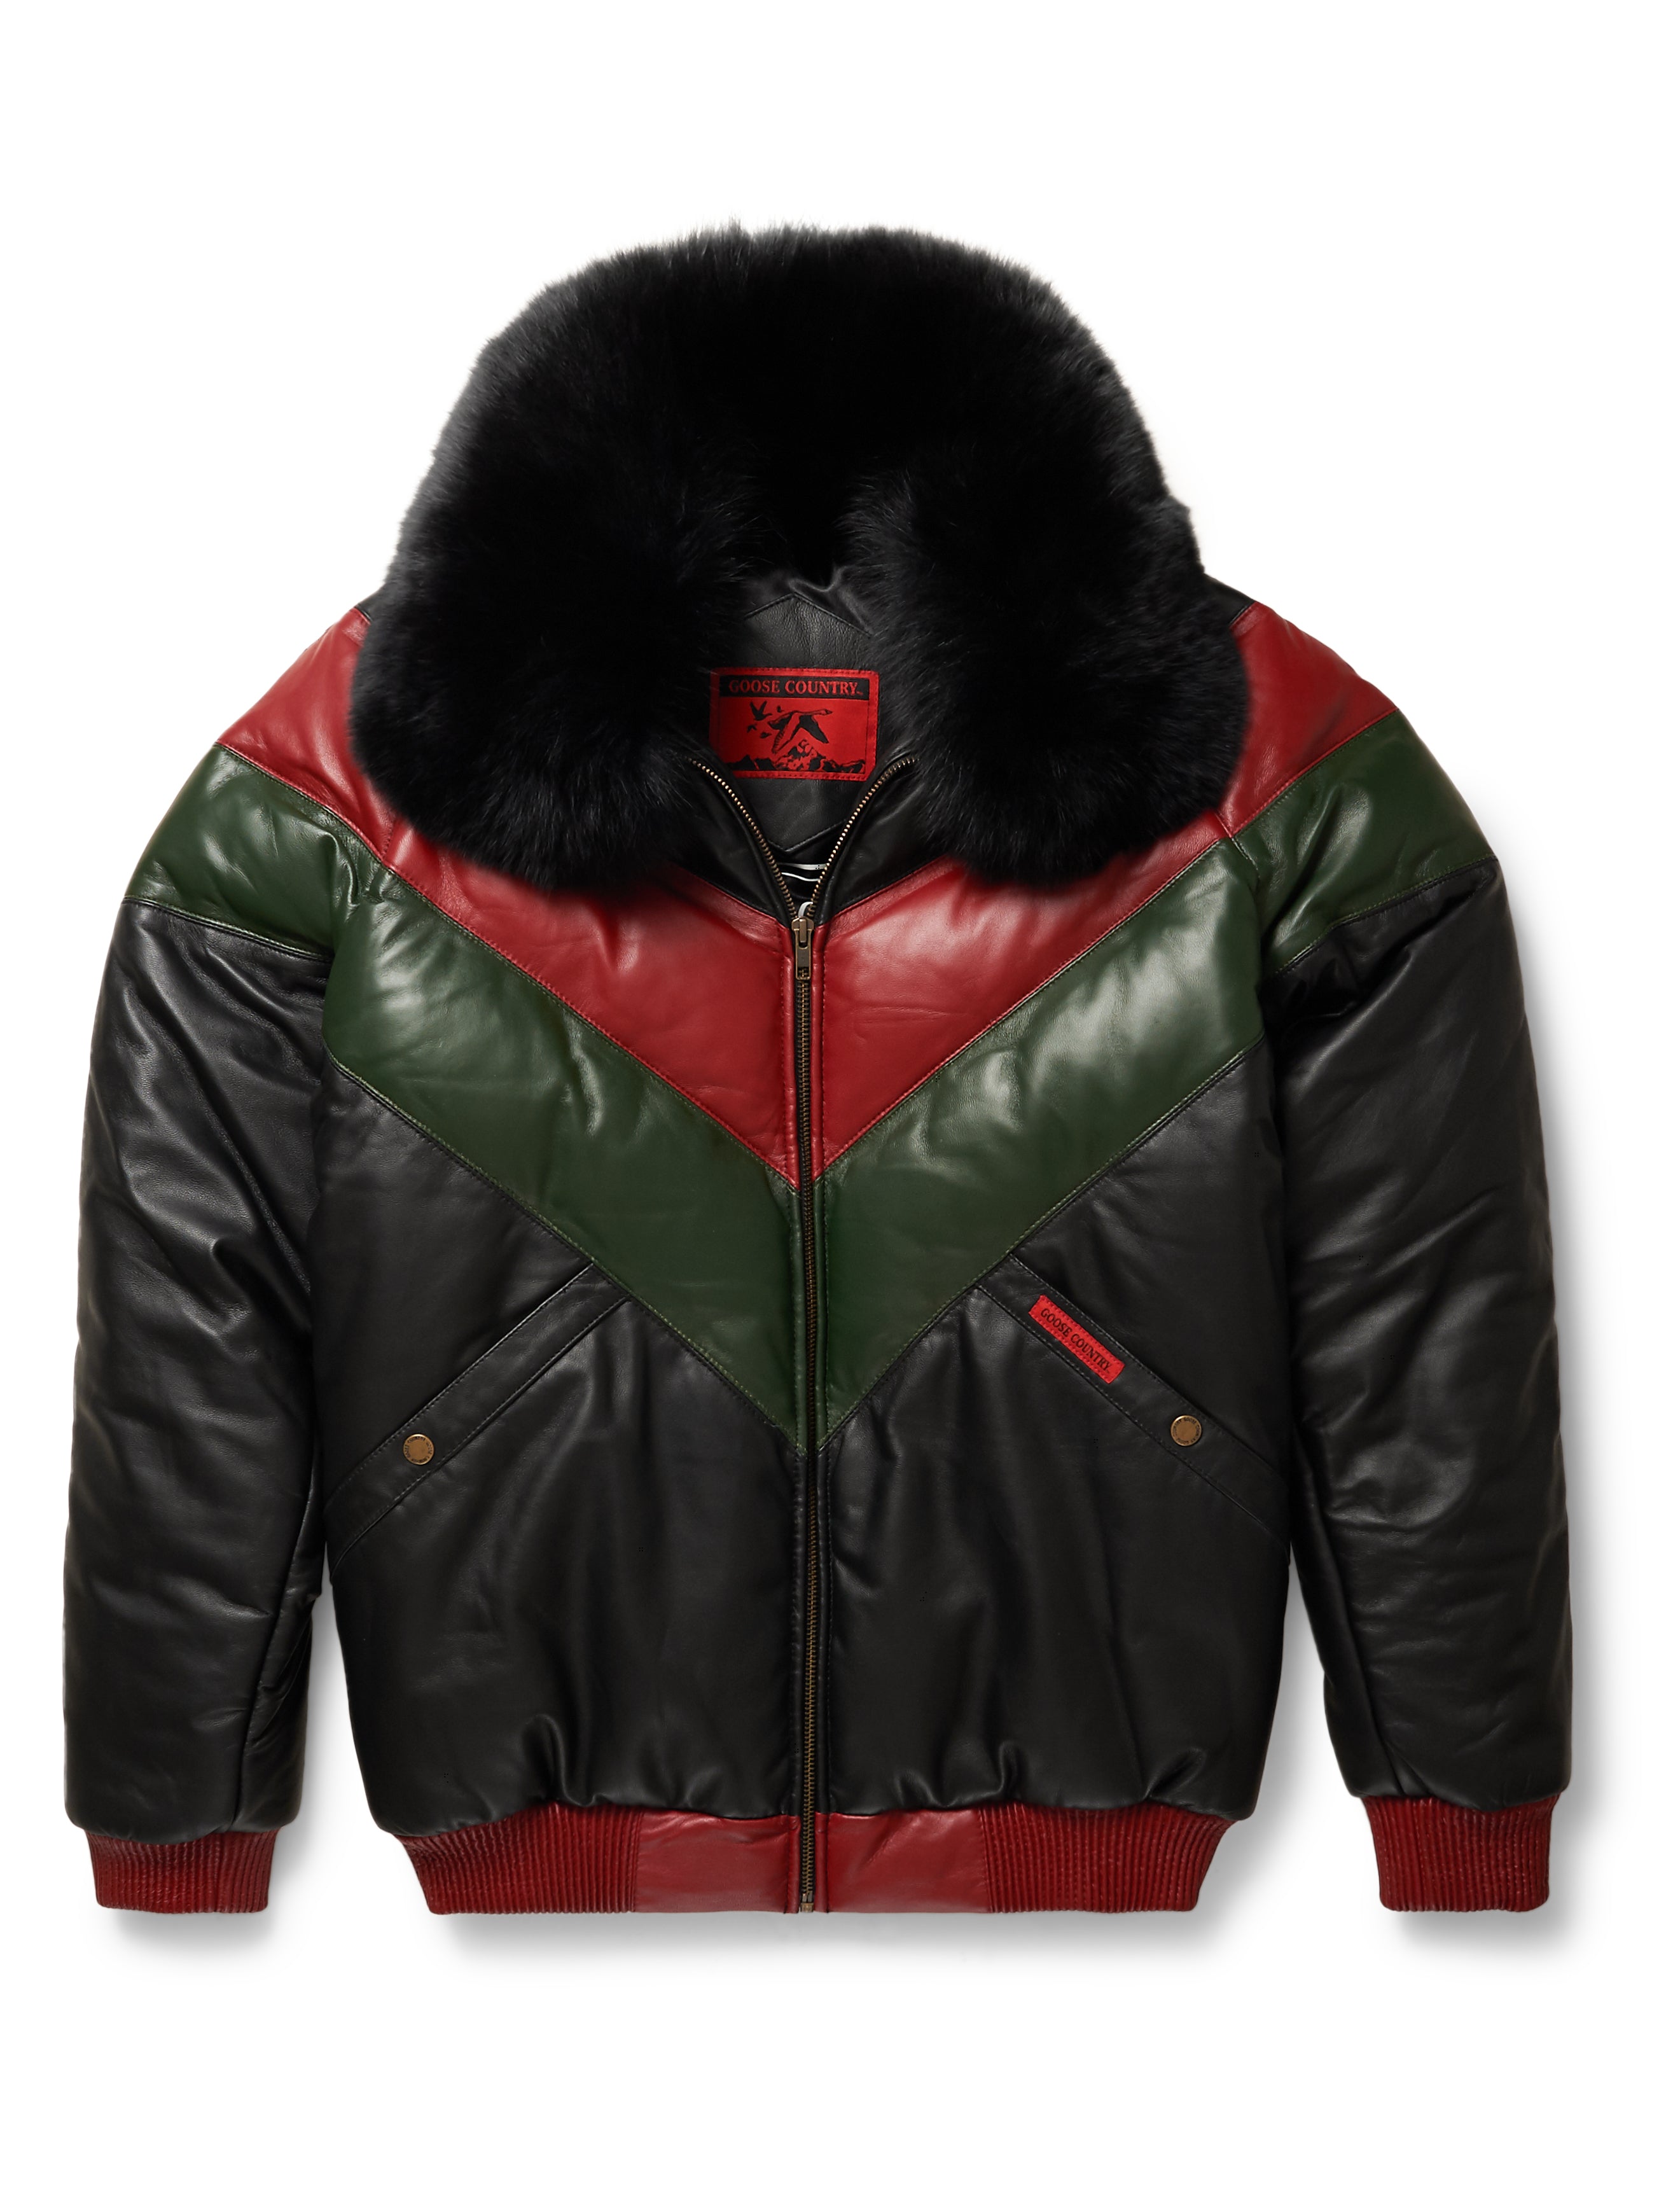 Mink Moto Jacket with Fox Collar & Hood in Red in Men